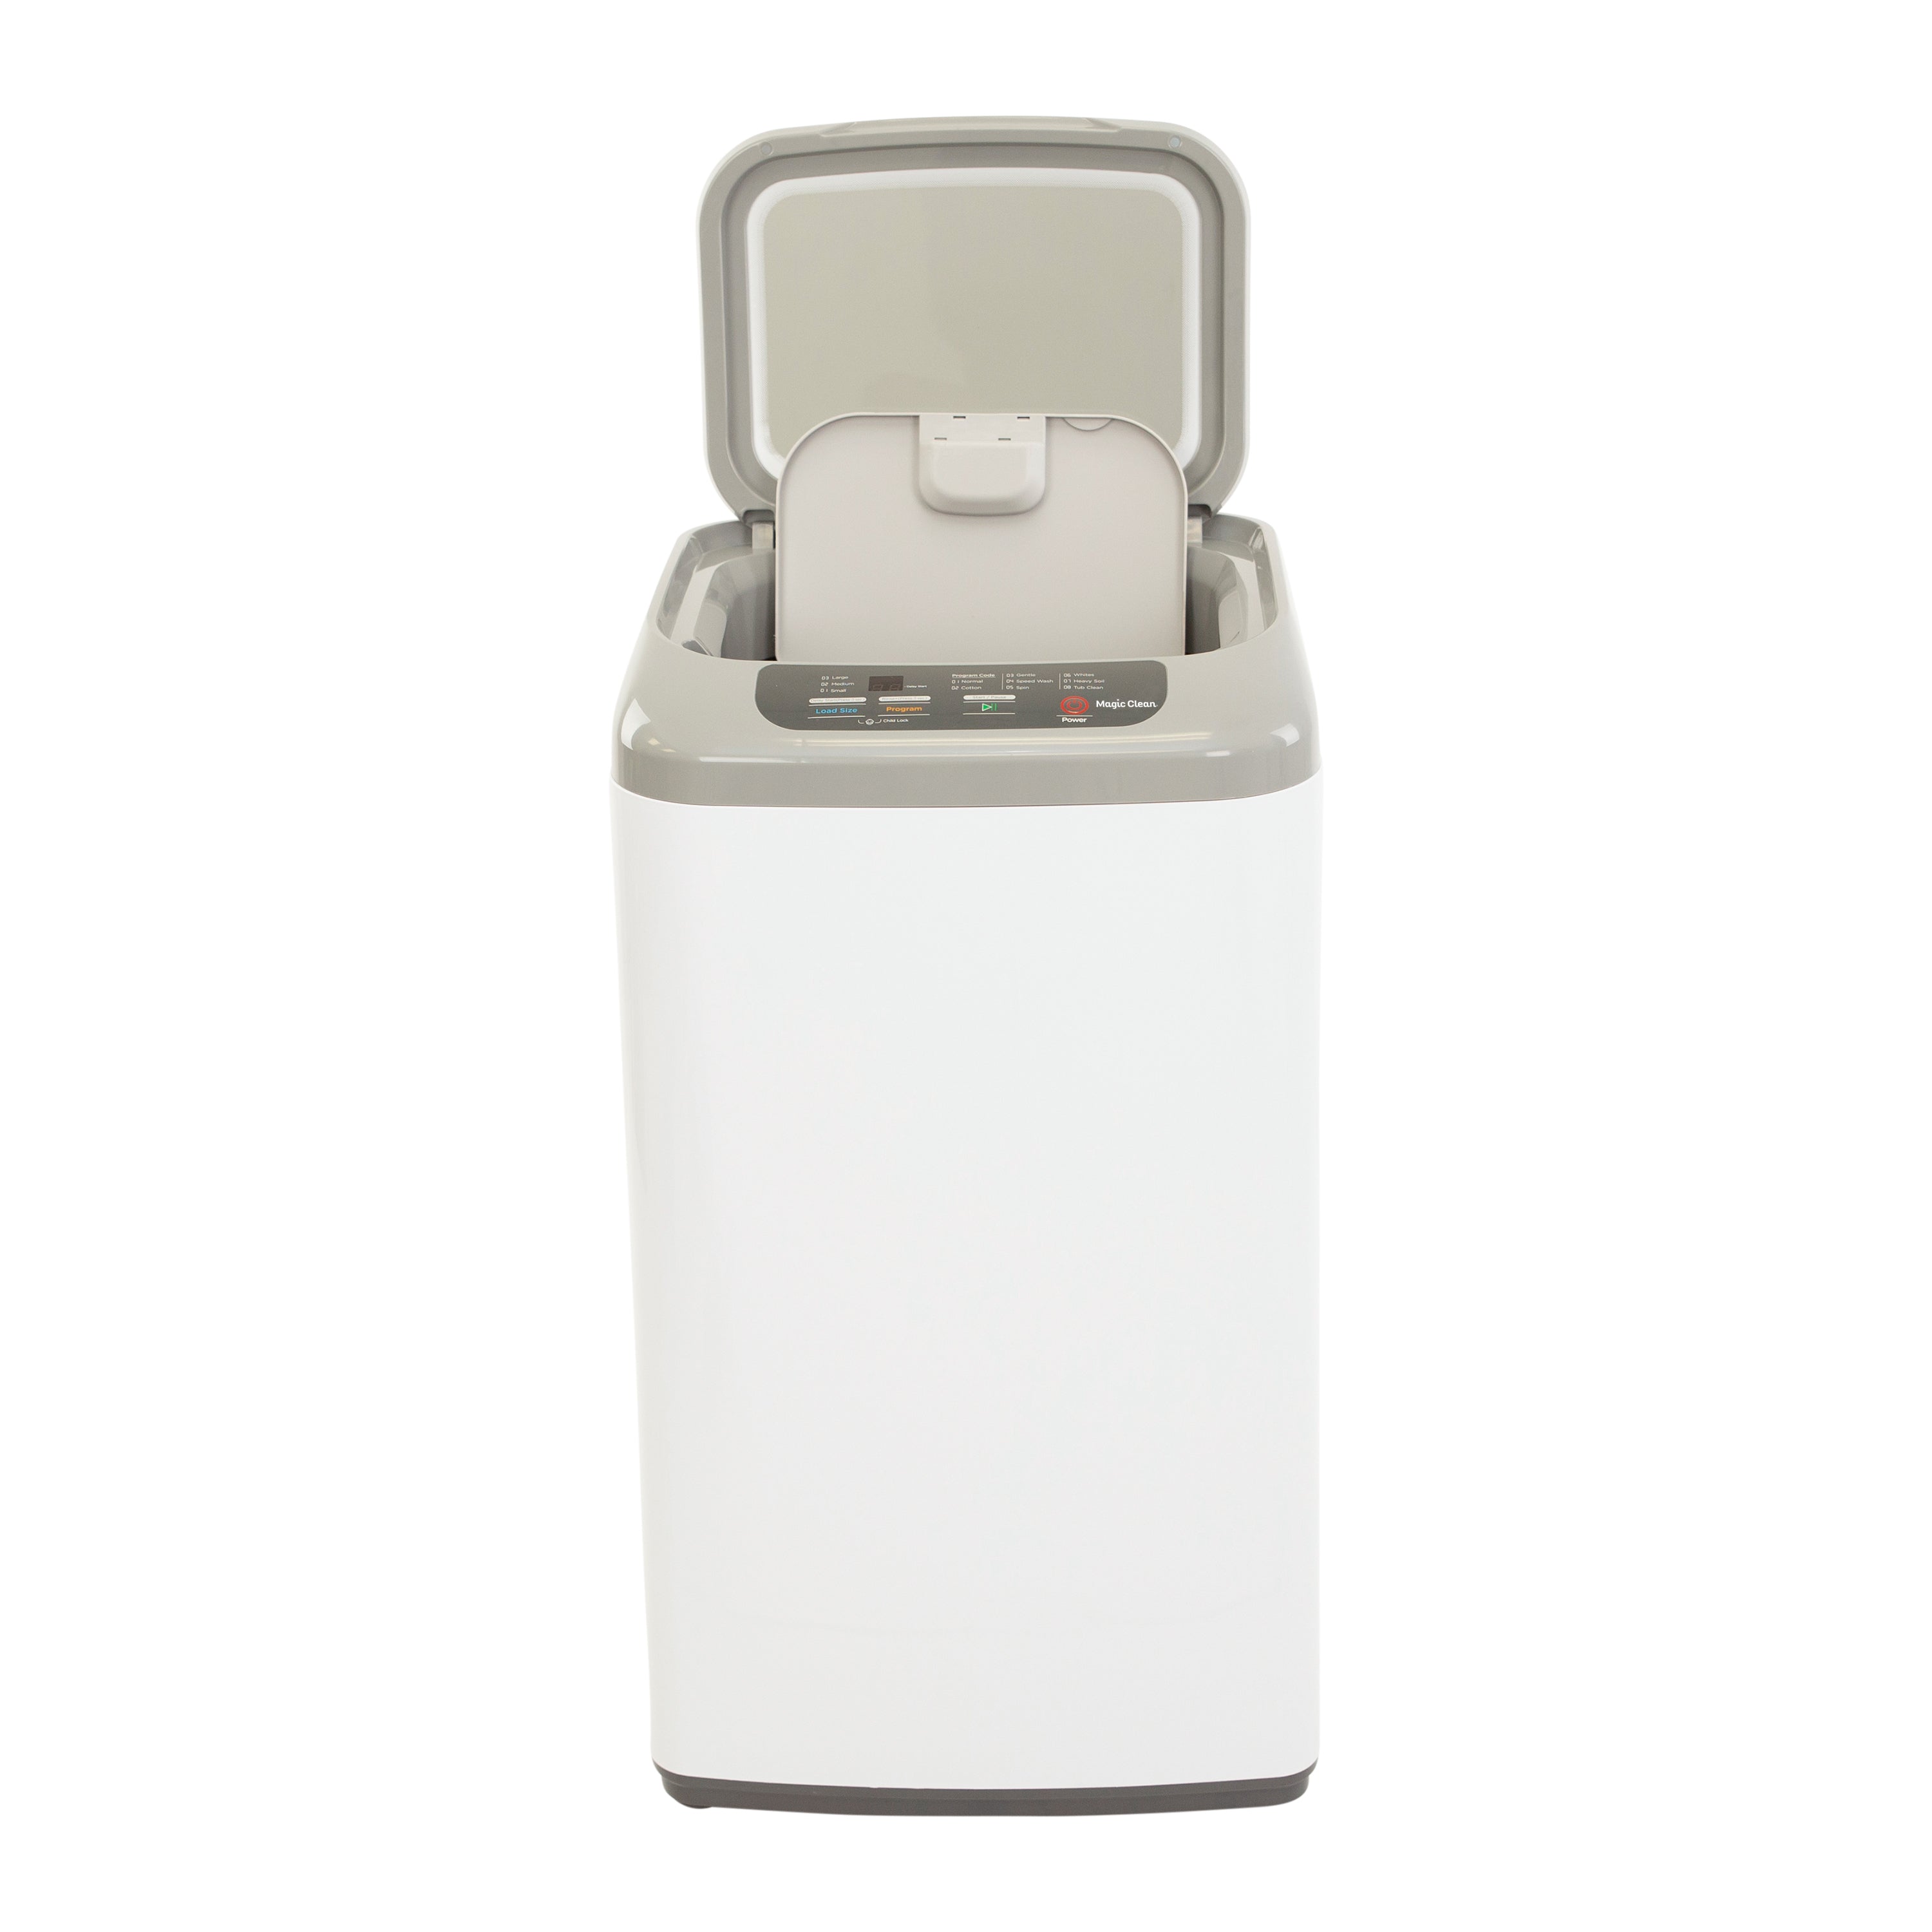 Avanti Magic Clean 2.6-cu ft Portable Electric Dryer (White) in